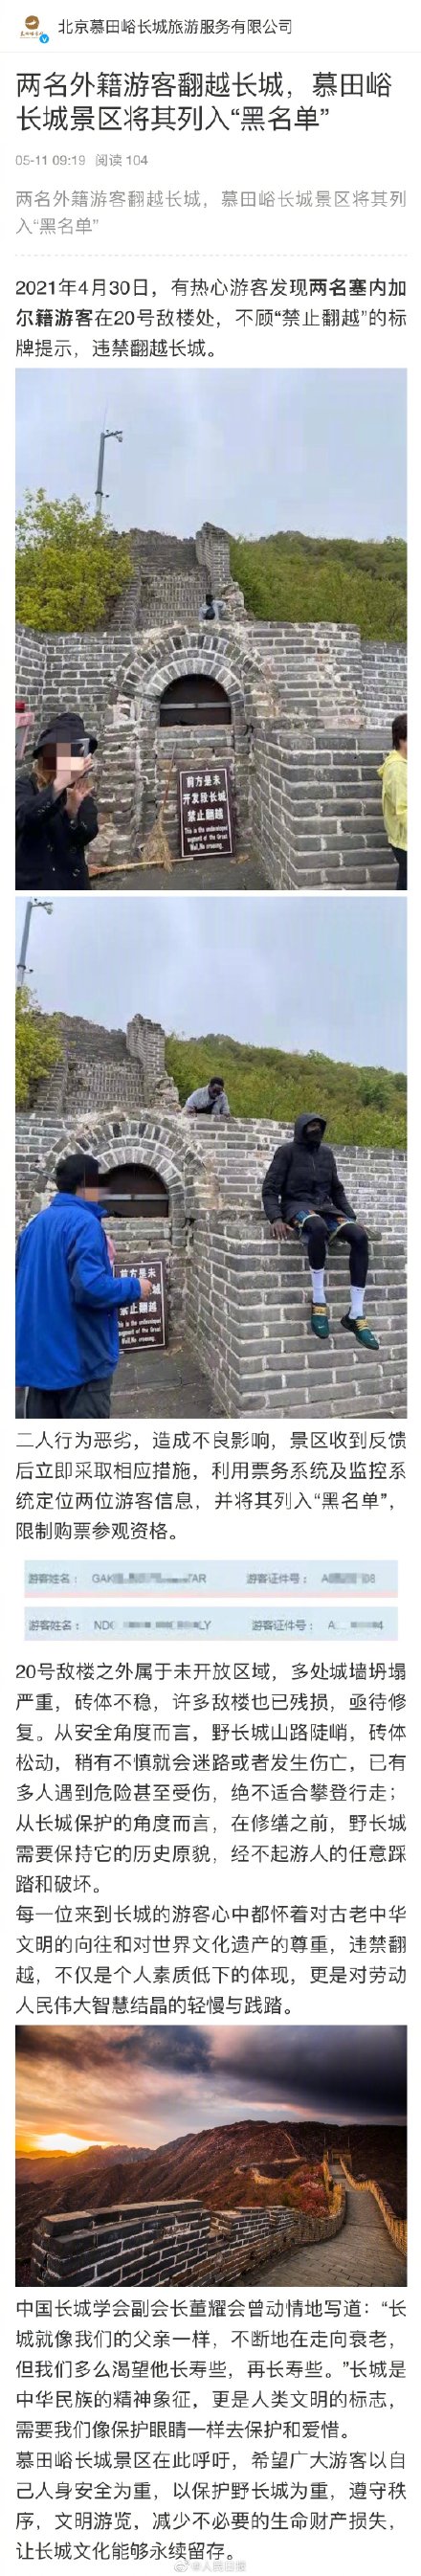 两名外籍游客翻越长城被列入黑名单